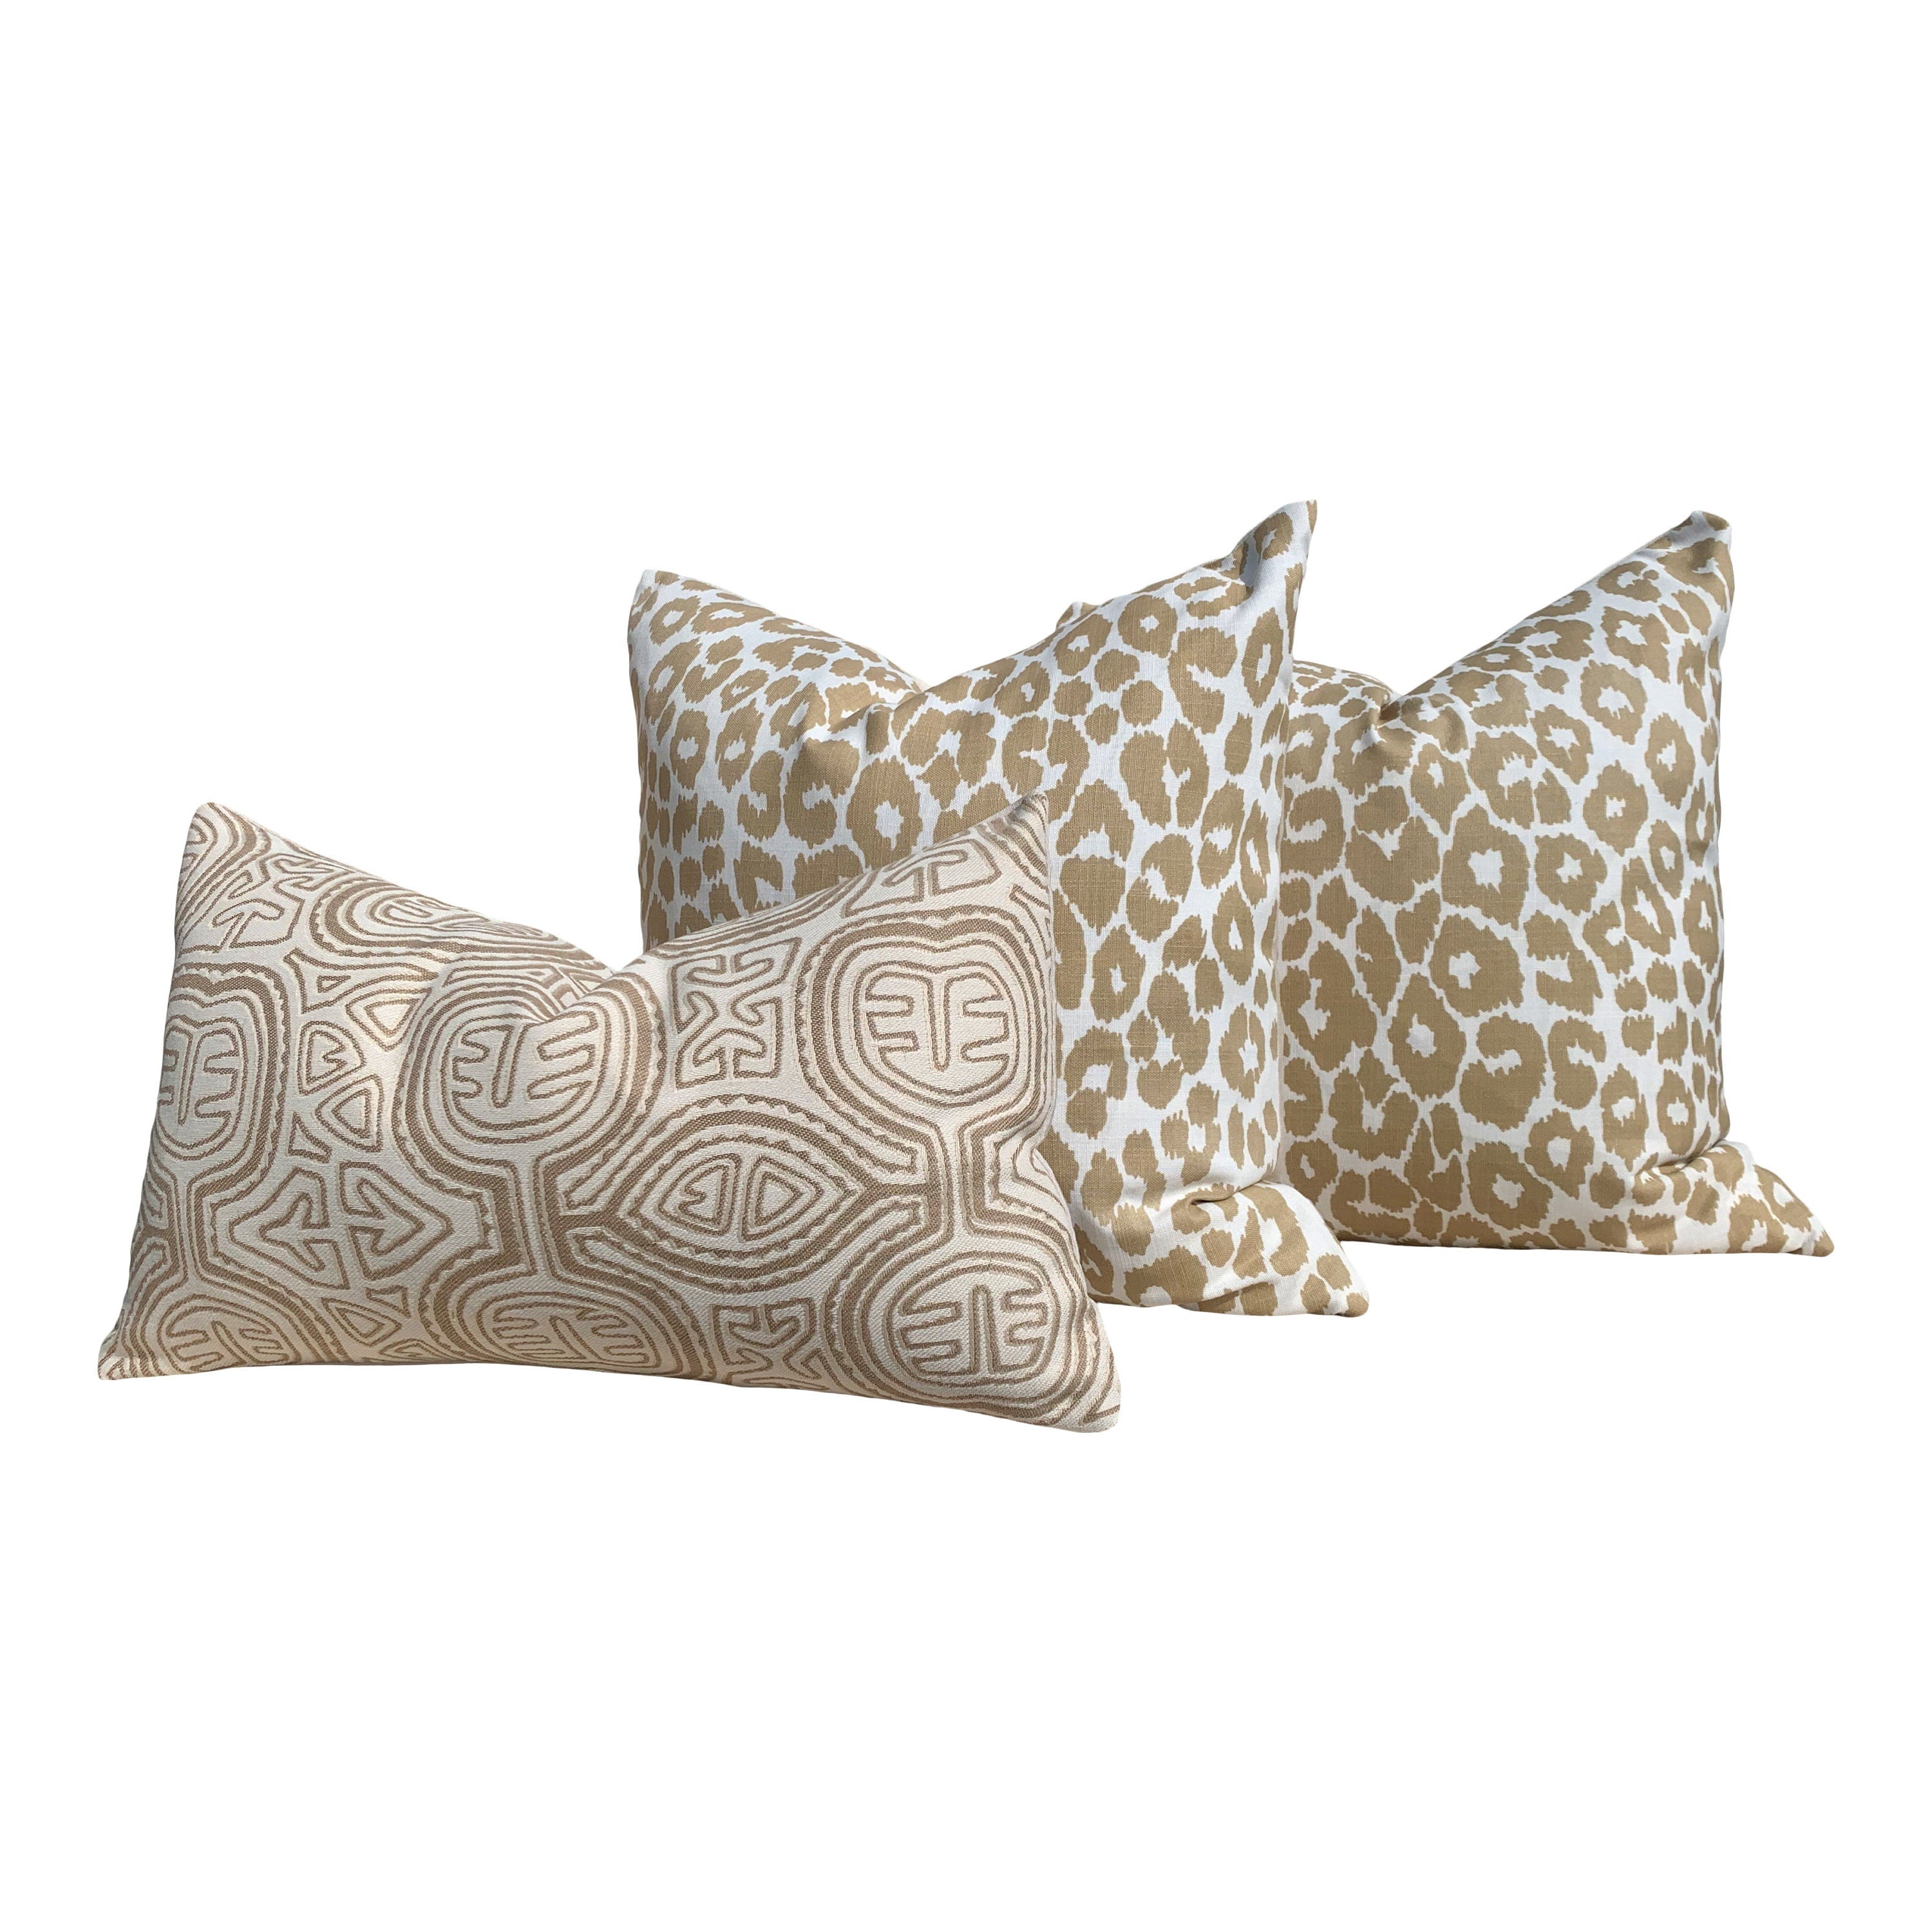 Indoor/Outdoor Schumacher Leopard Pillow in Tan. Animal Print Outdoor lumbar Pillow in Beige.